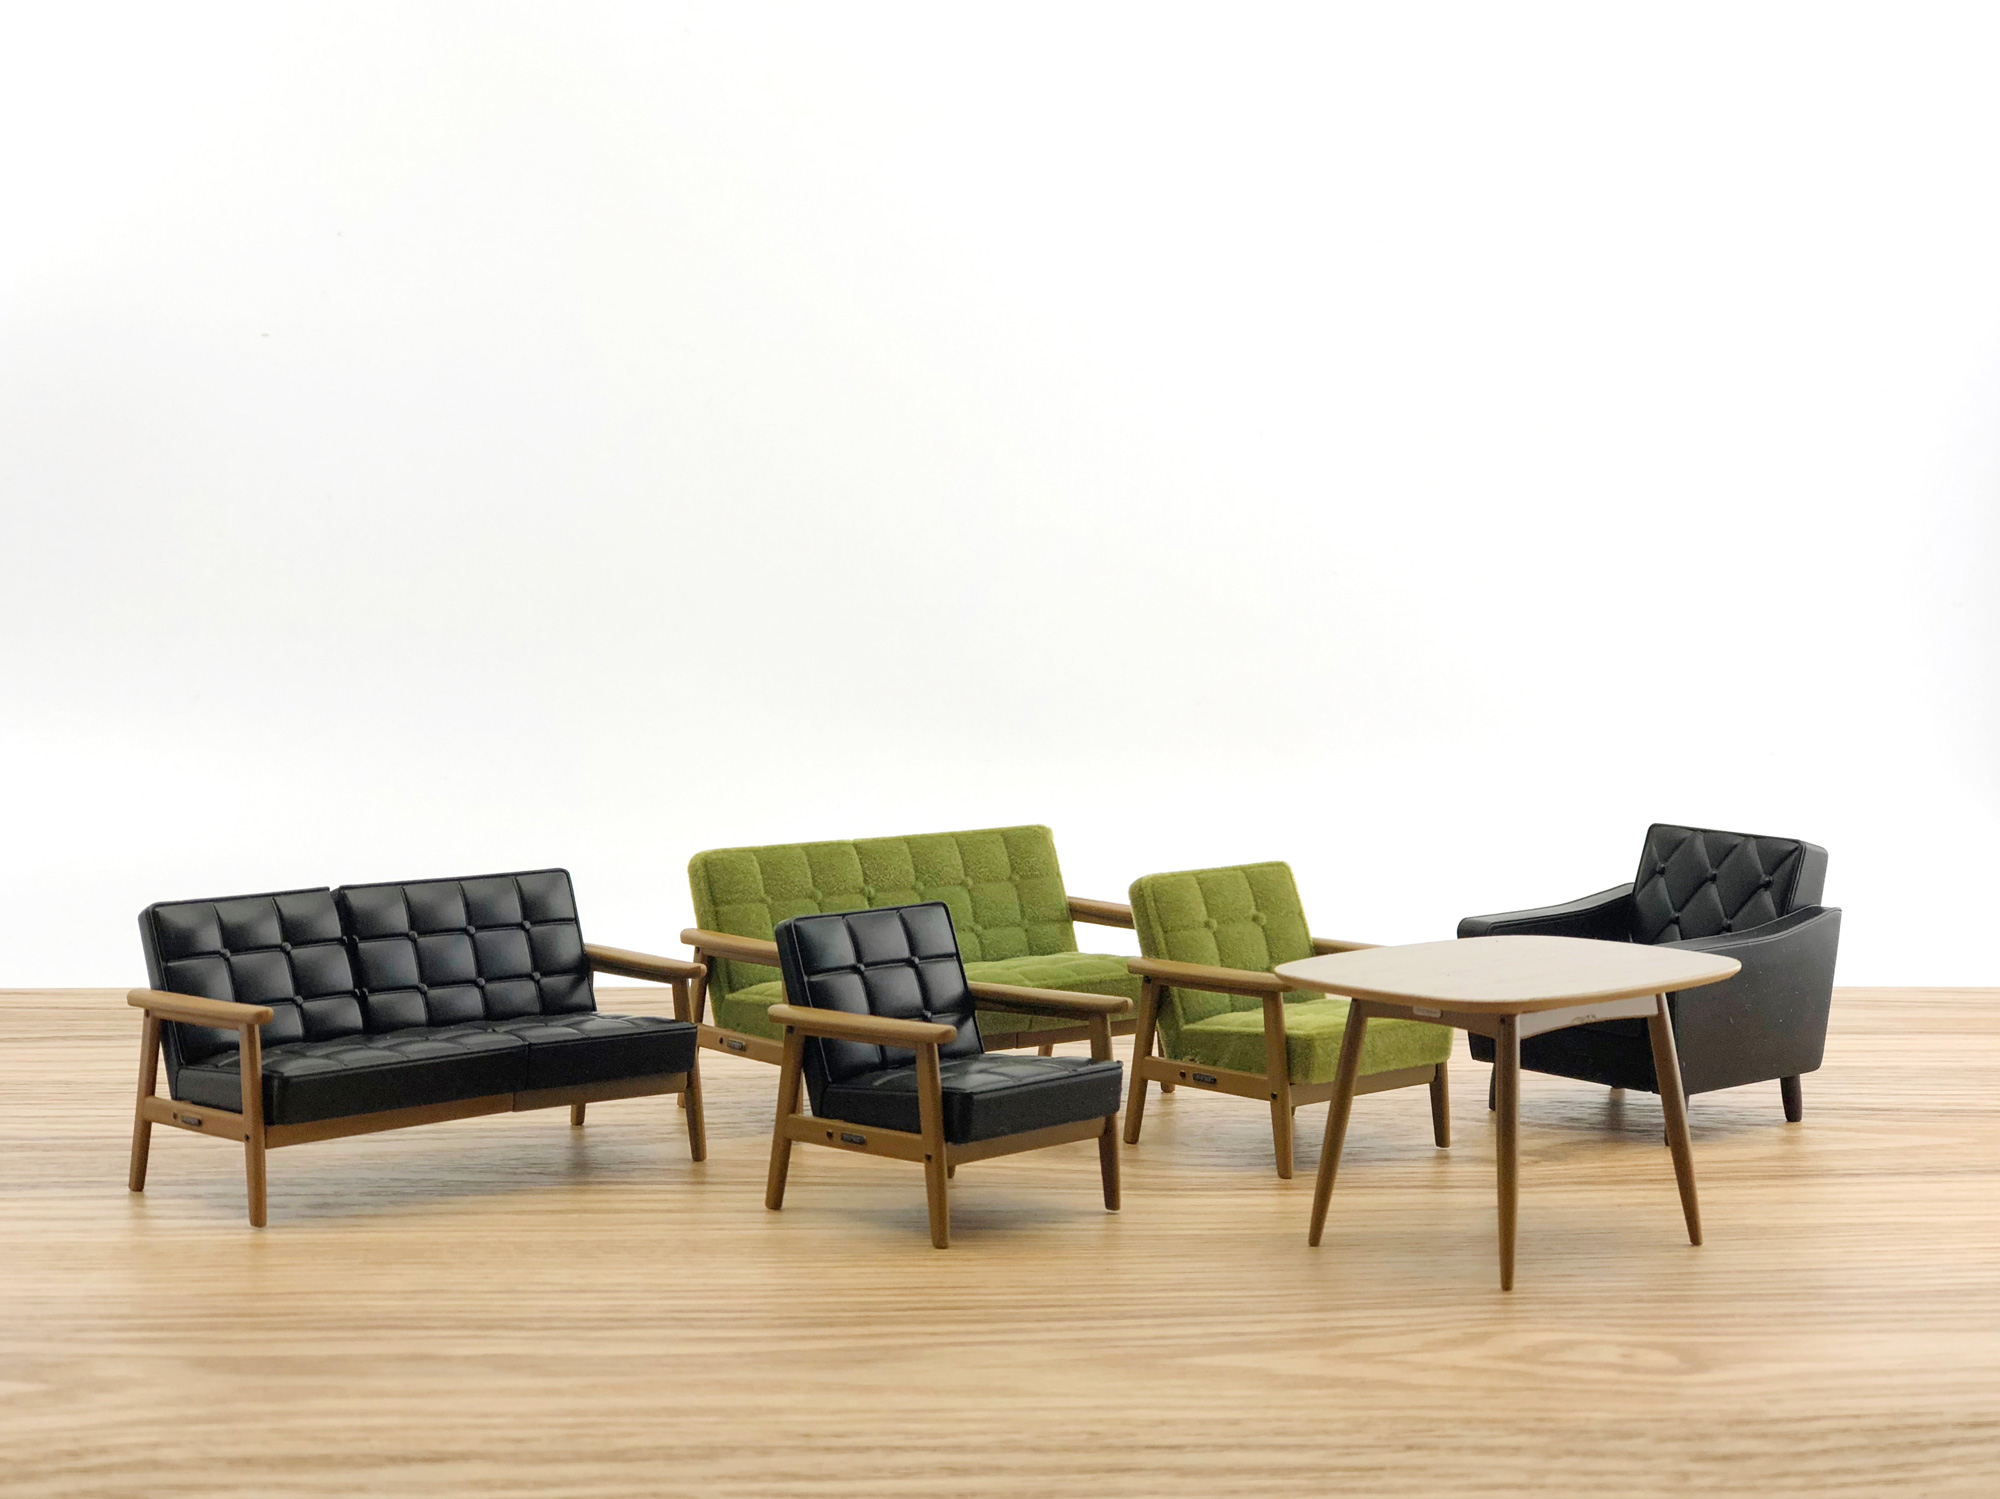 來自愛知縣創業於1940年的「KARIMOKU」是以天然木材製造並考量人體工學的家具製造商，「K Chair」考量日本人體型設計，迄今多成為經典且持續受到喜愛。（圖片來源：時報出版提供）